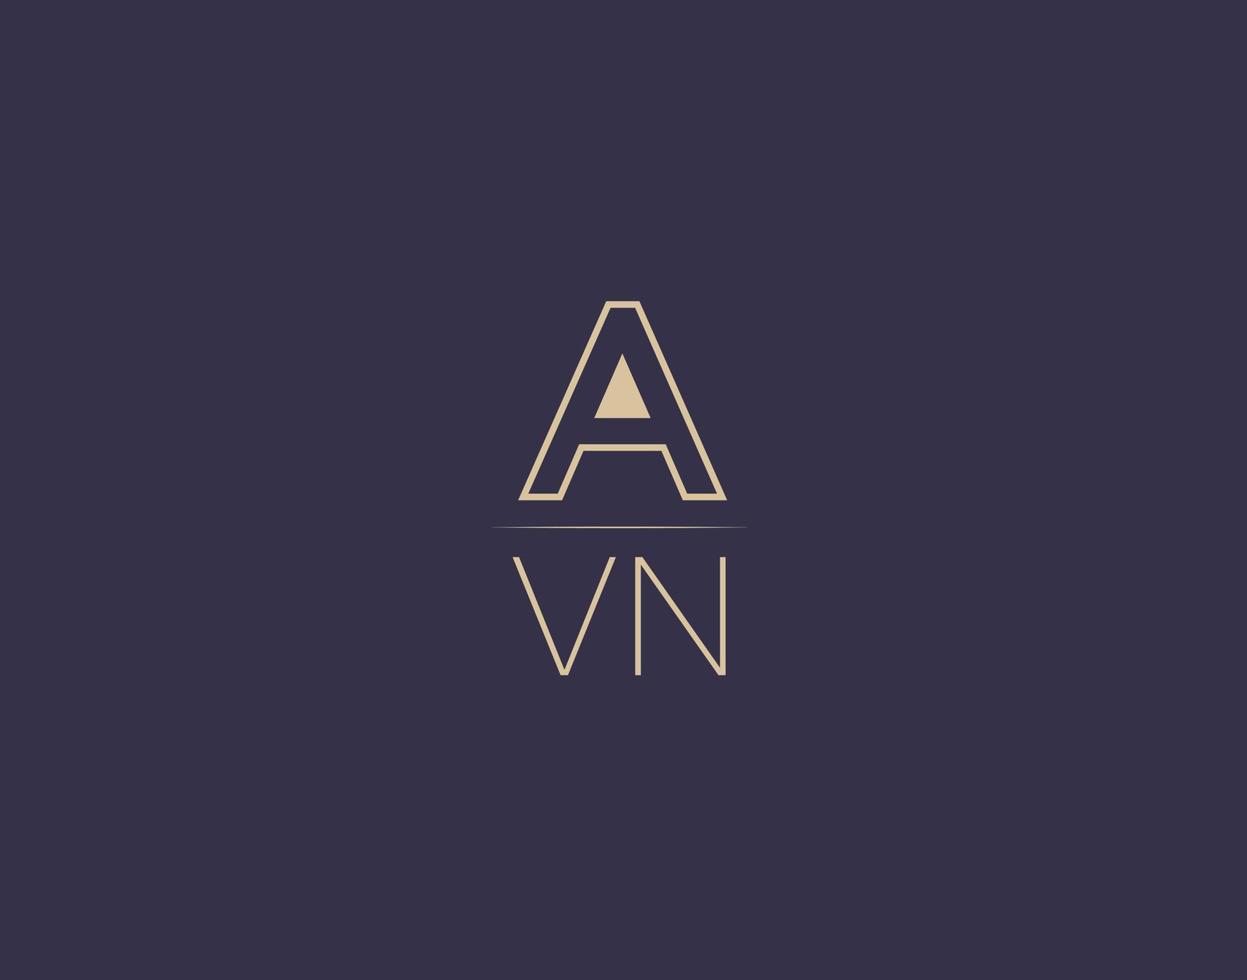 Avn Letter Logo Design moderne minimalistische Vektorbilder vektor